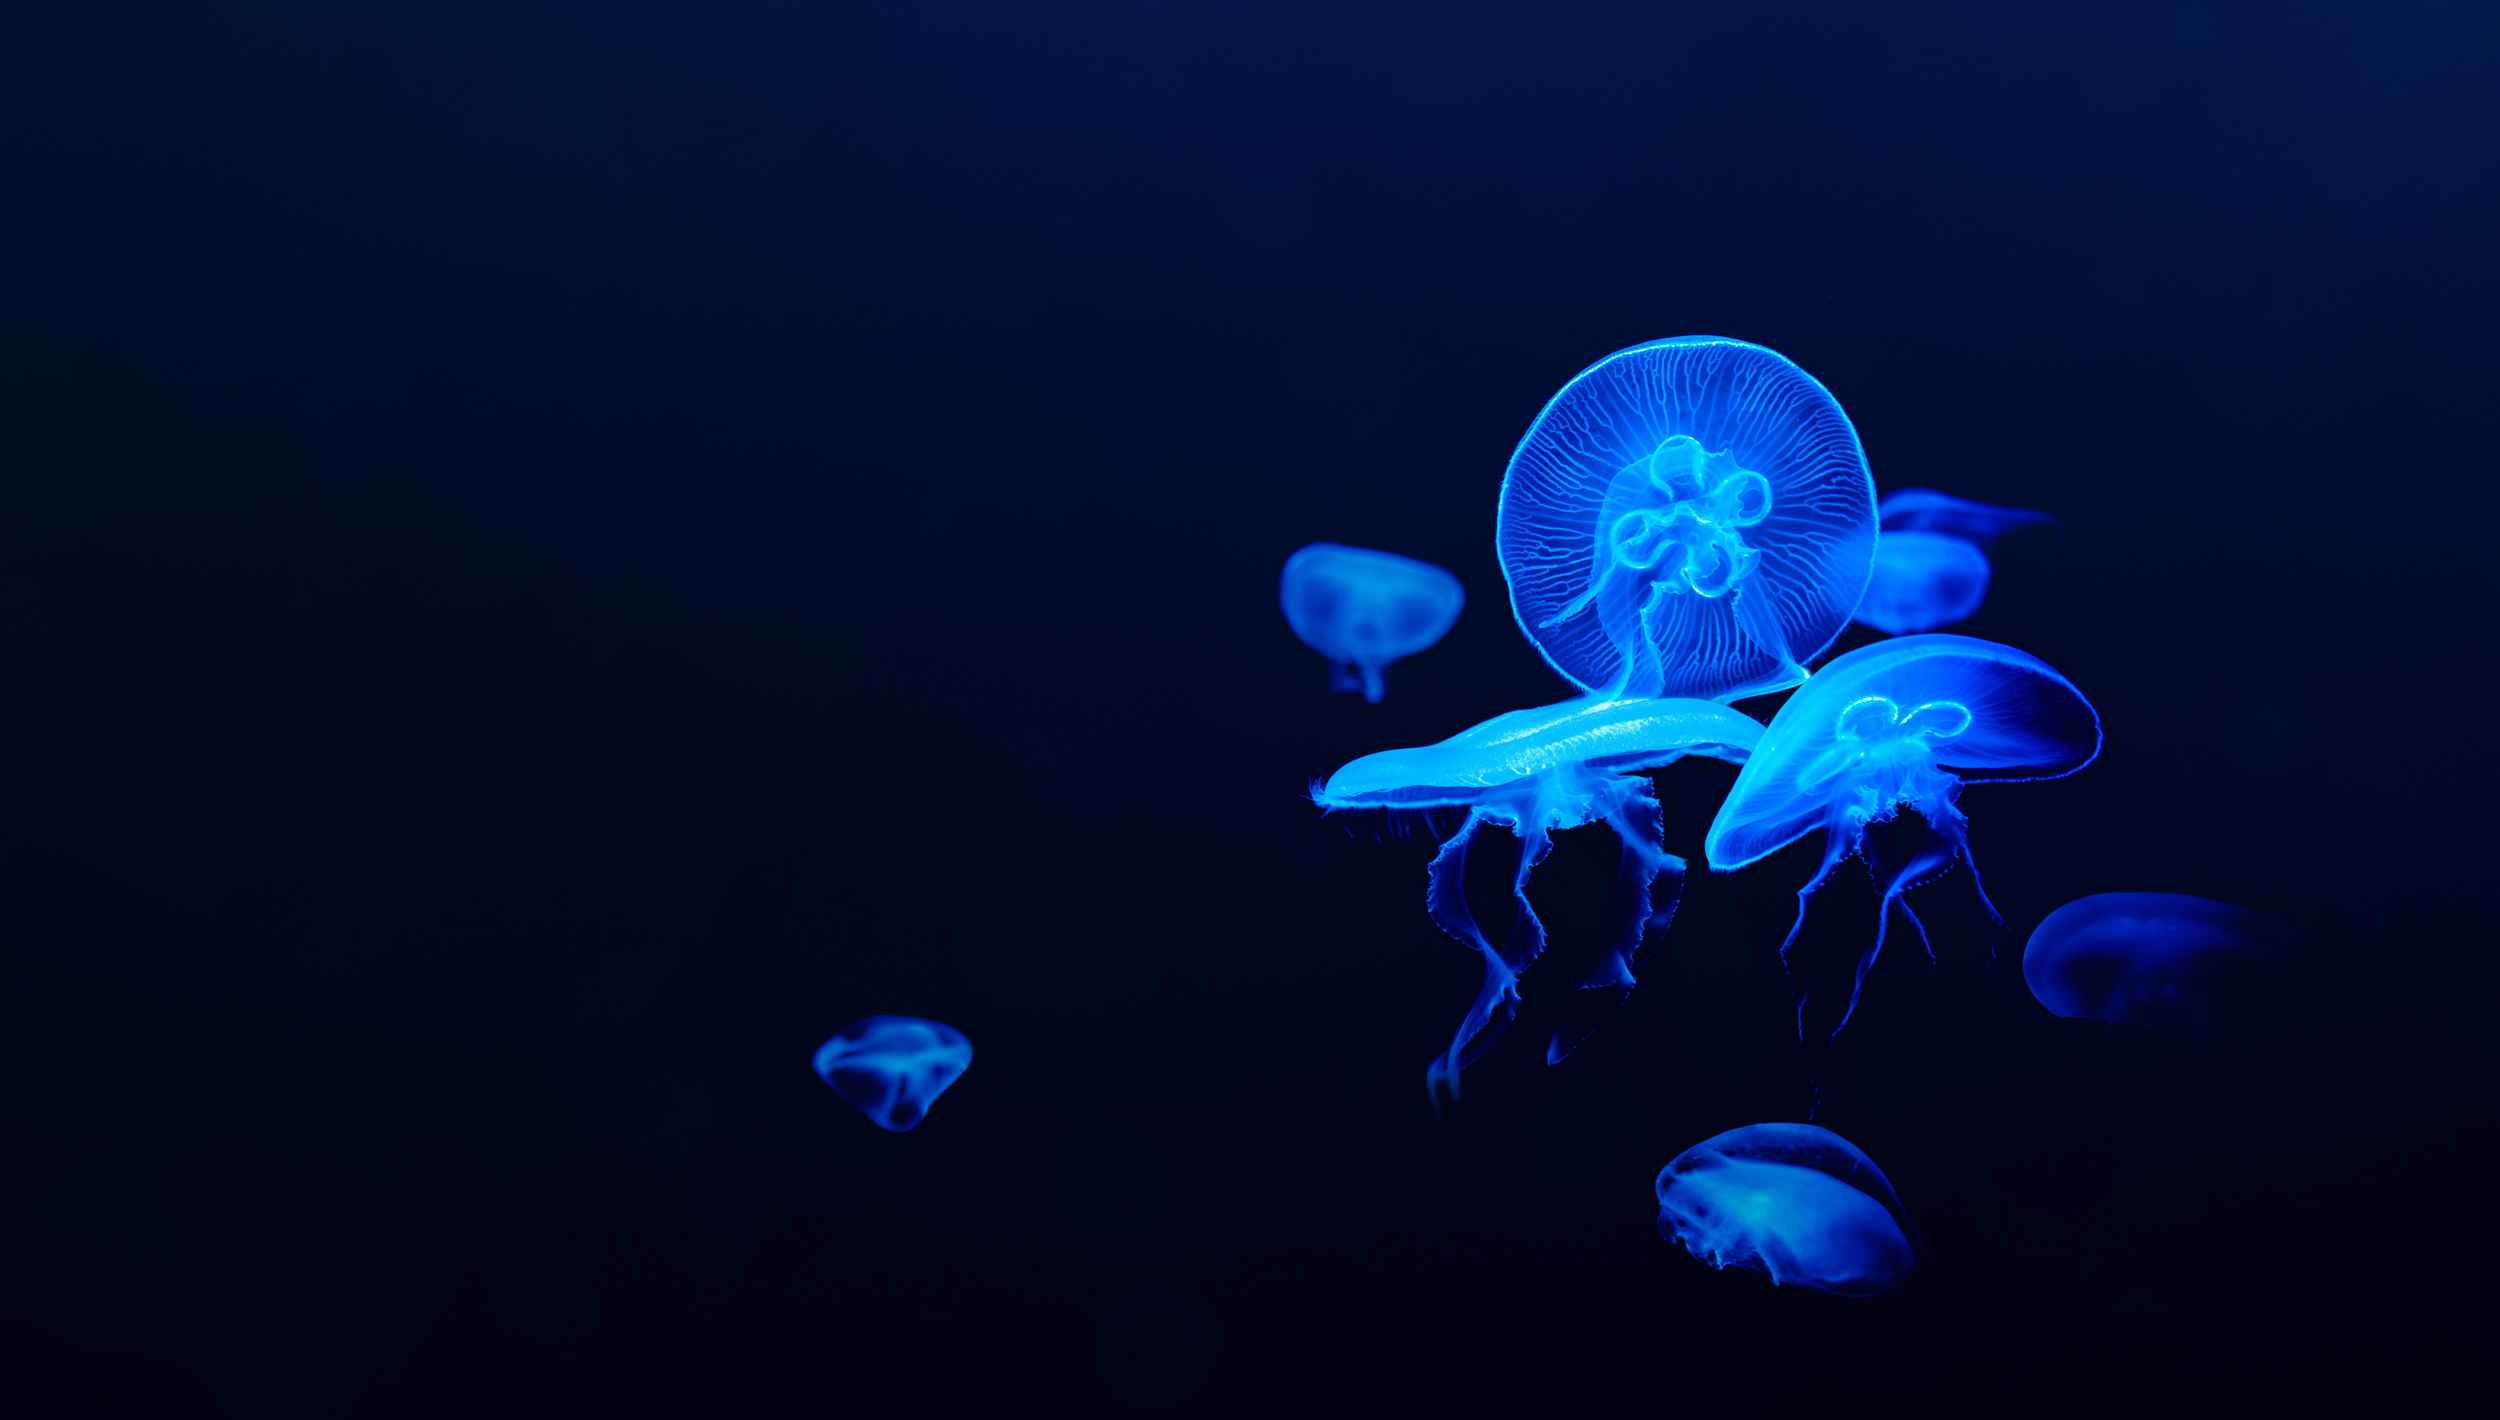 jellyfish brand image